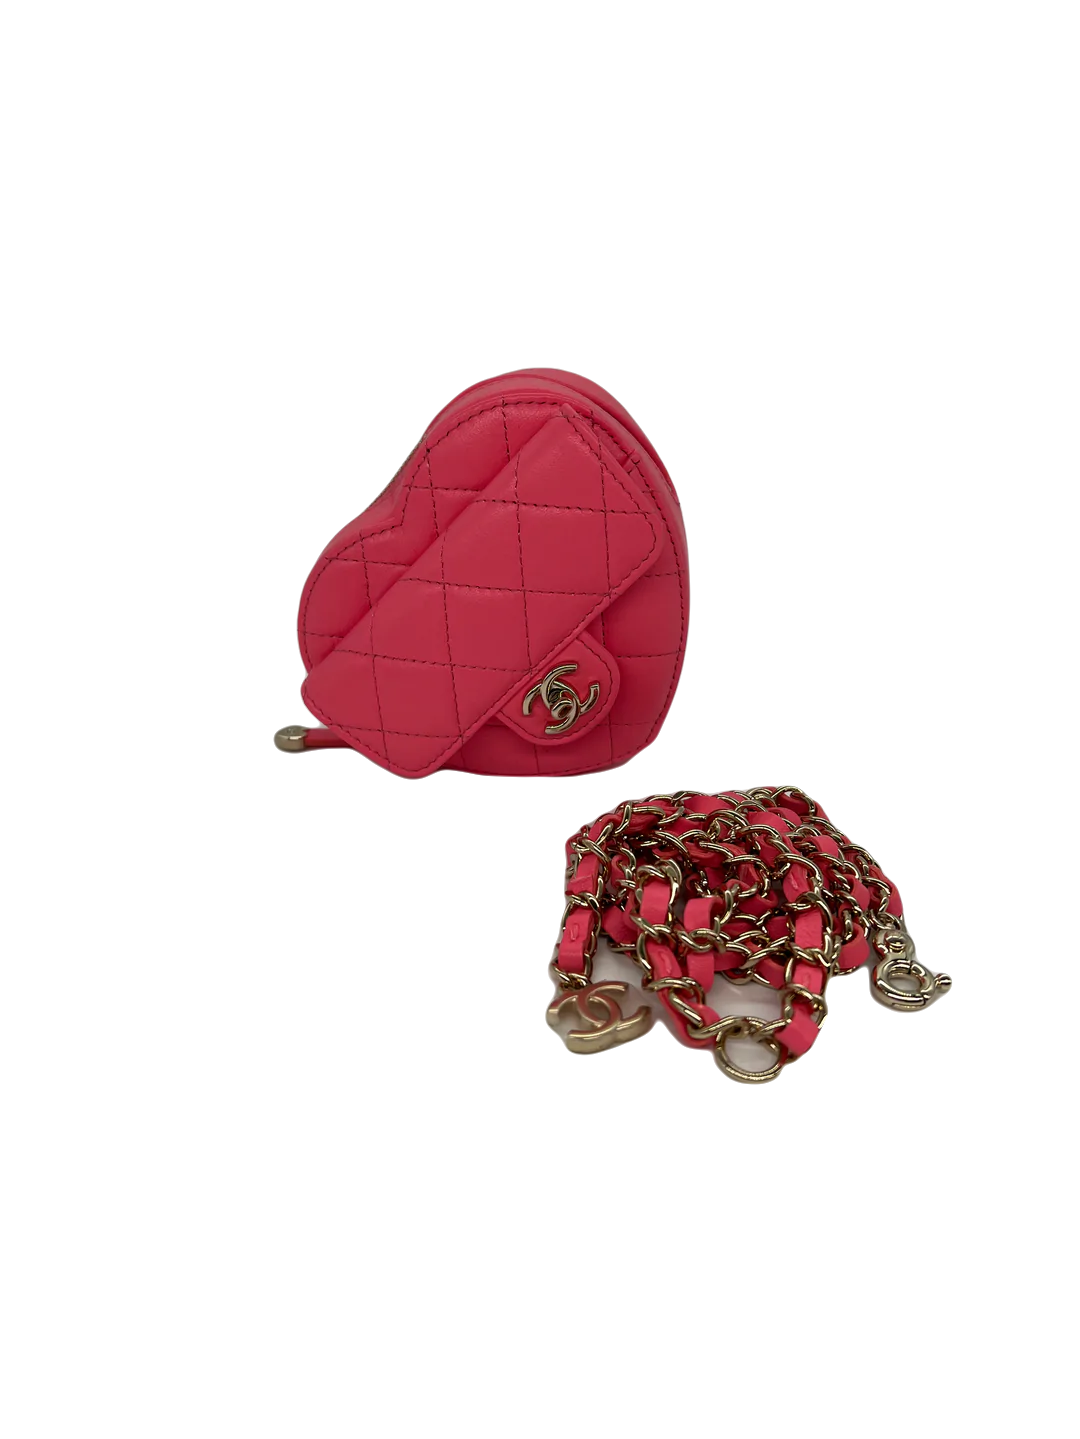 Chanel Heart Belt Bag Pink 2022 - SOLD